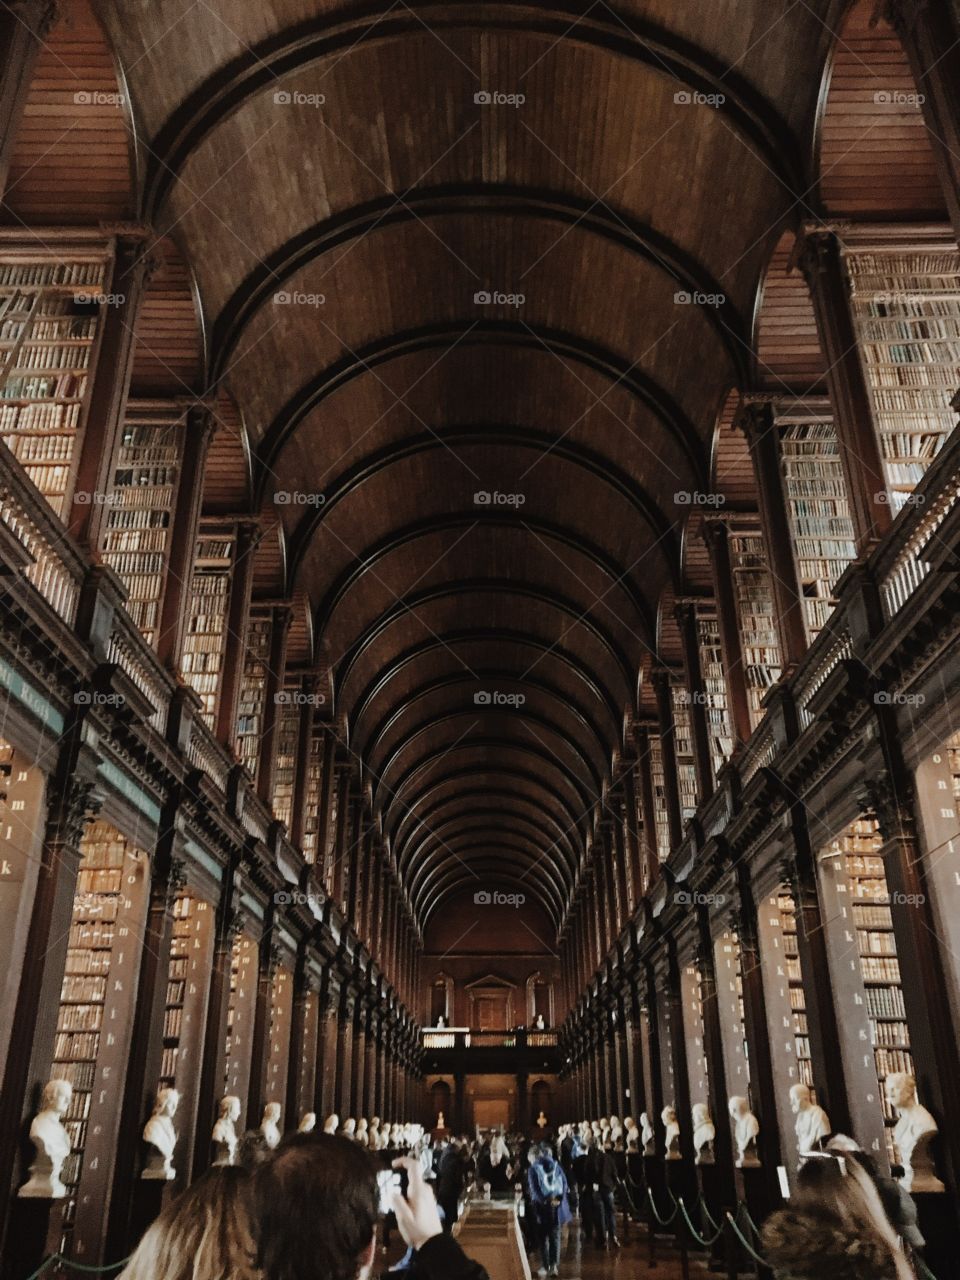 Book of Kells Museum in Dublin 